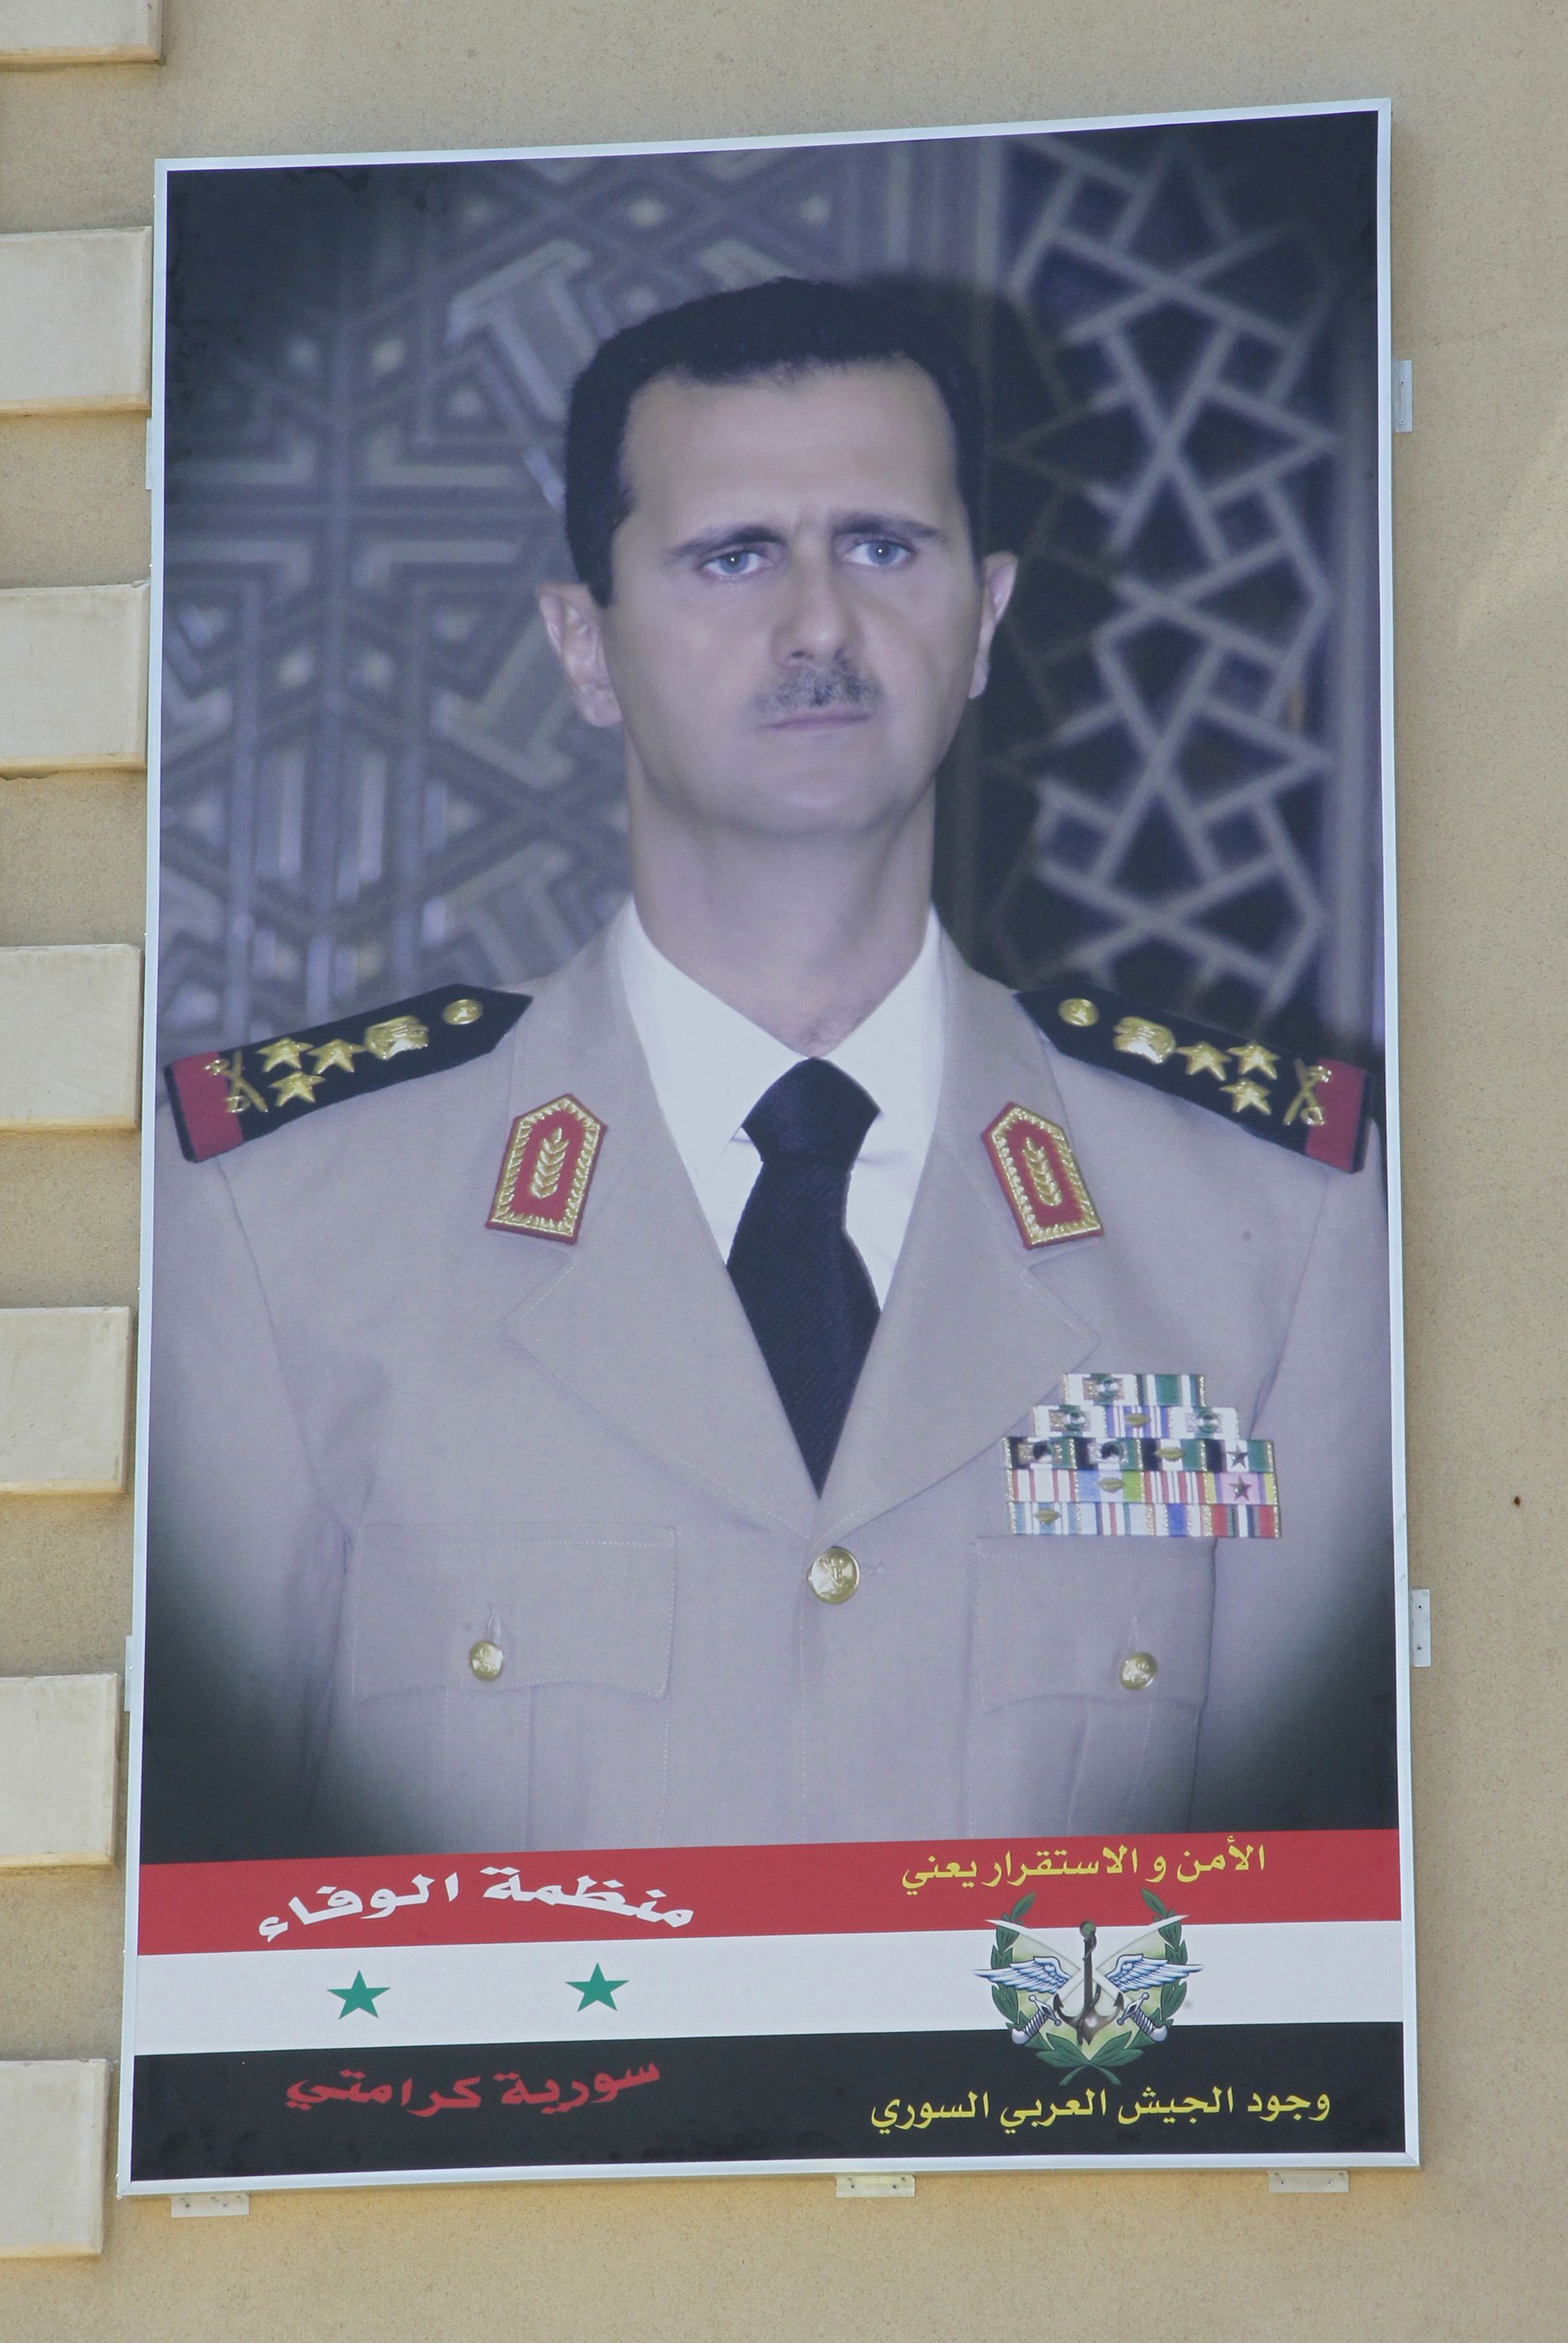 Πορτρέτο του Σύρου προέδρου με τη στρατιωτική του στολή σε κτίριο της Δαμασκού - ΦΩΤΟΓΡΑΦΙΑ REUTERS 